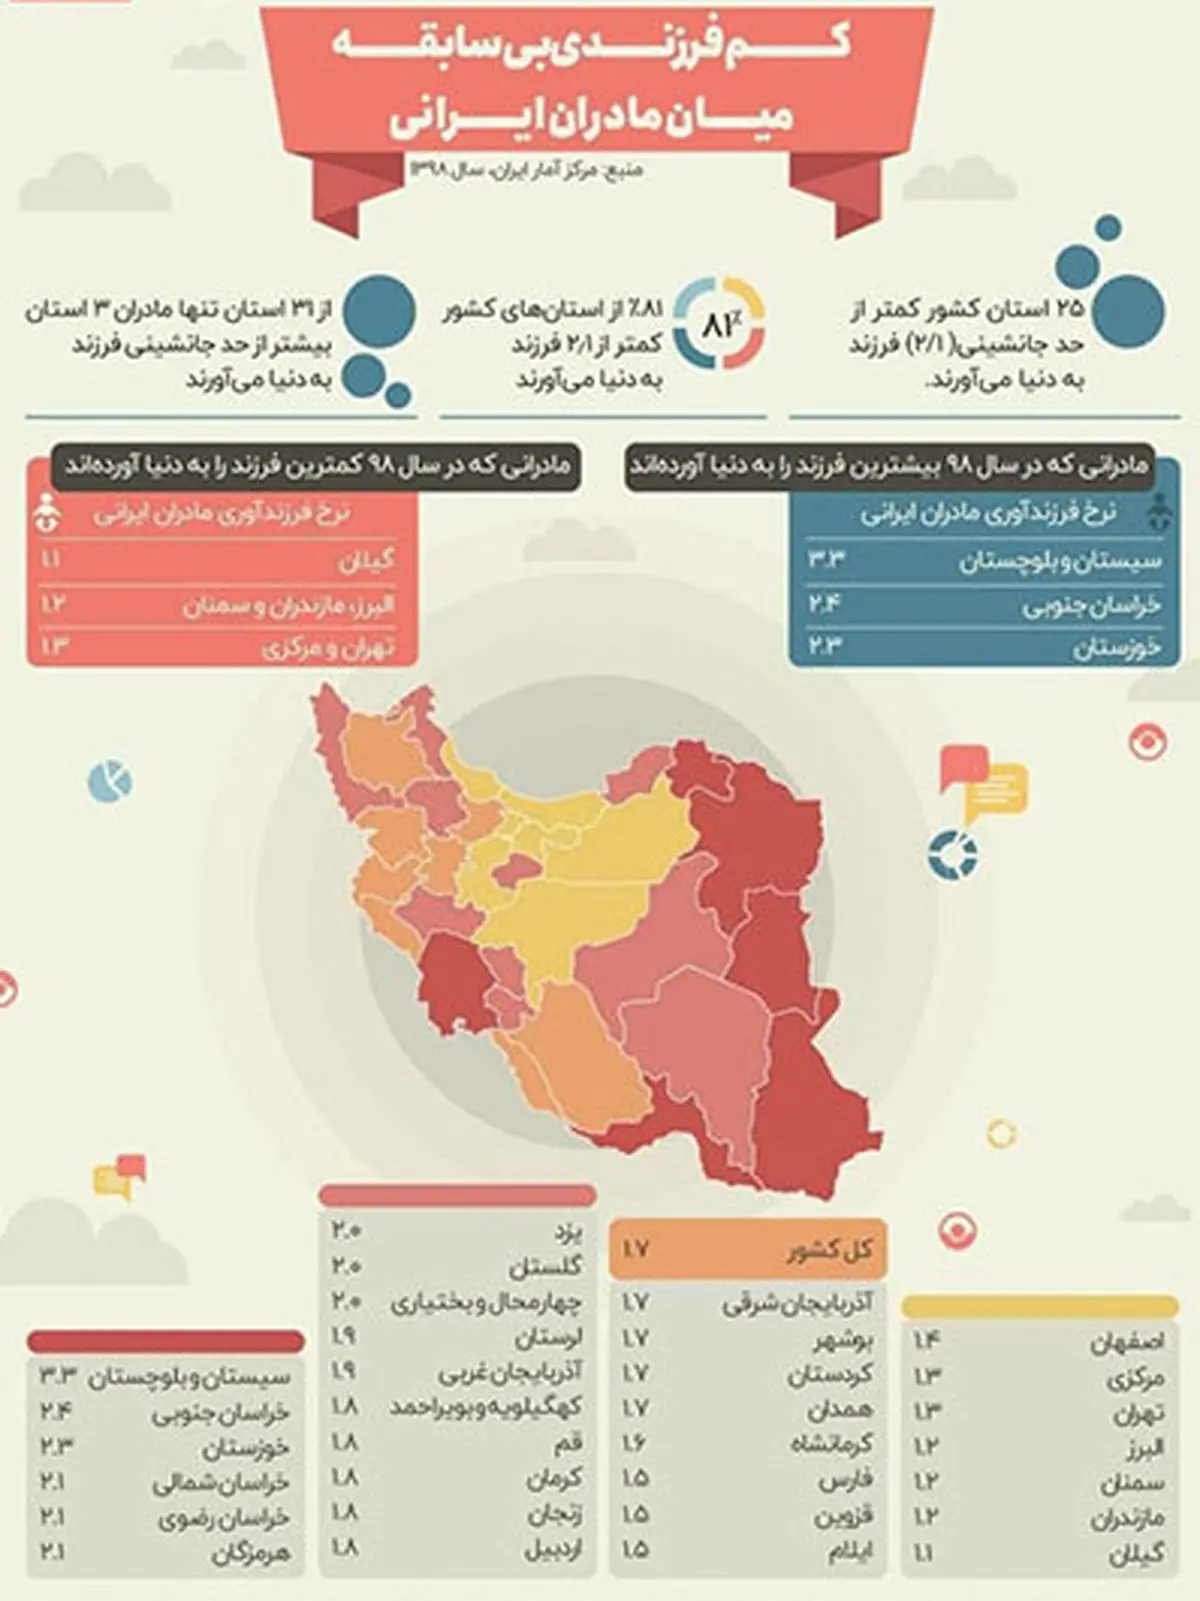 آمار| تولد بیش از دو فرزند در ایران کاهش داشته است| میانگین آمار تولد فرزند در ایران